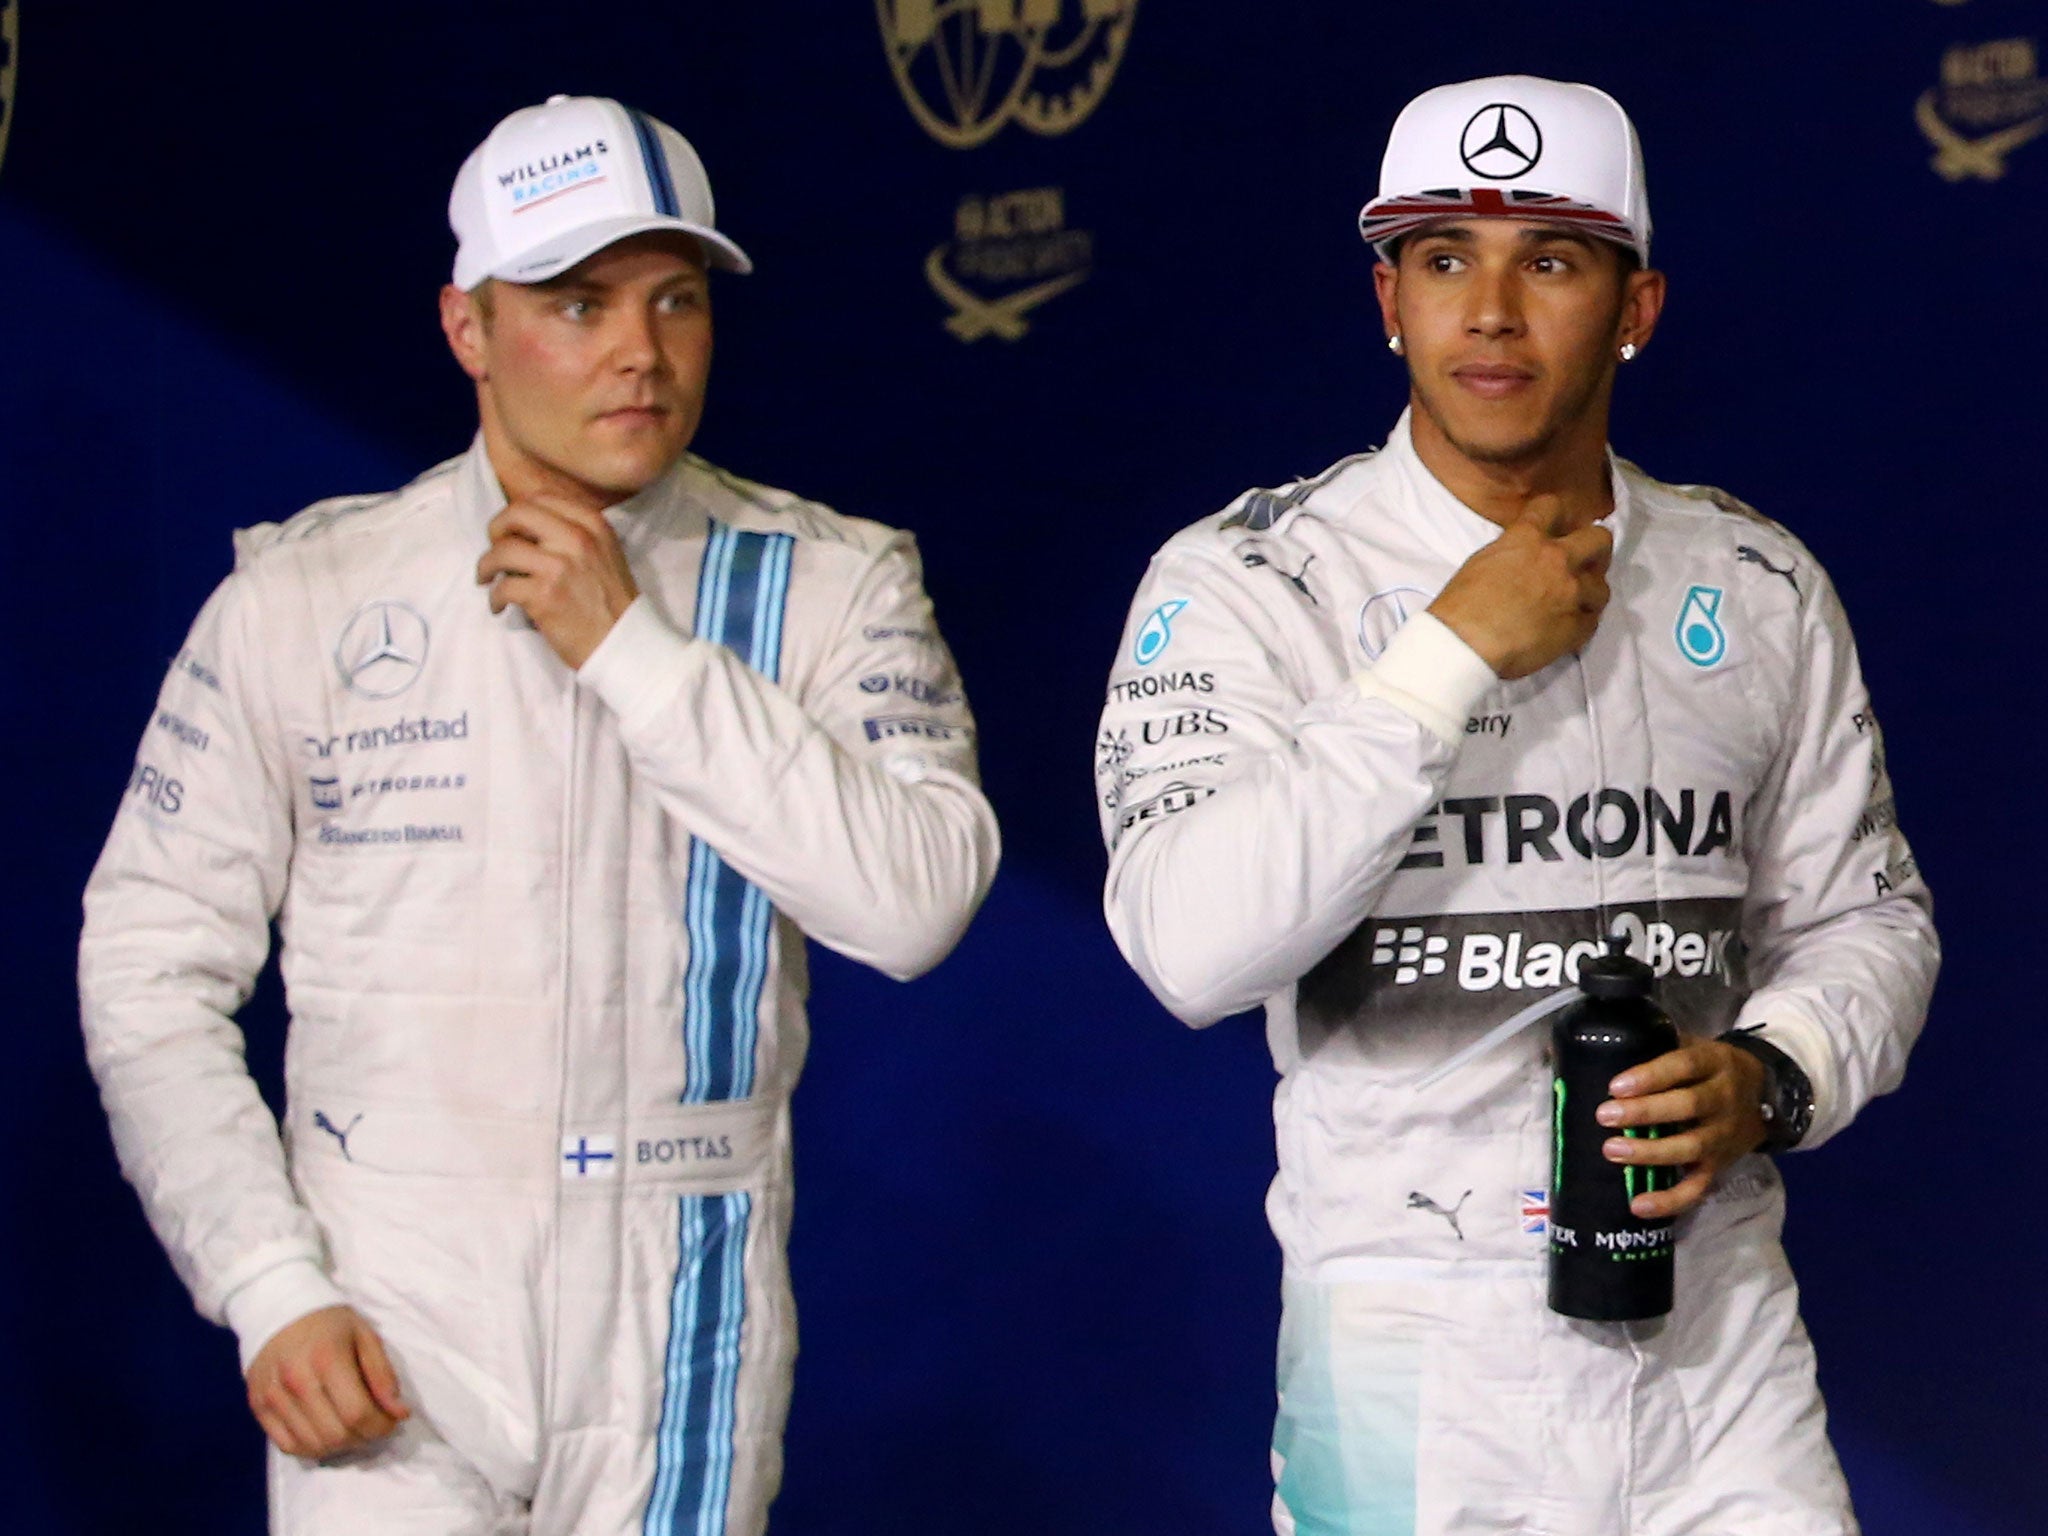 Valterri Bottas will partner Lewis Hamilton at Mercedes in 2017